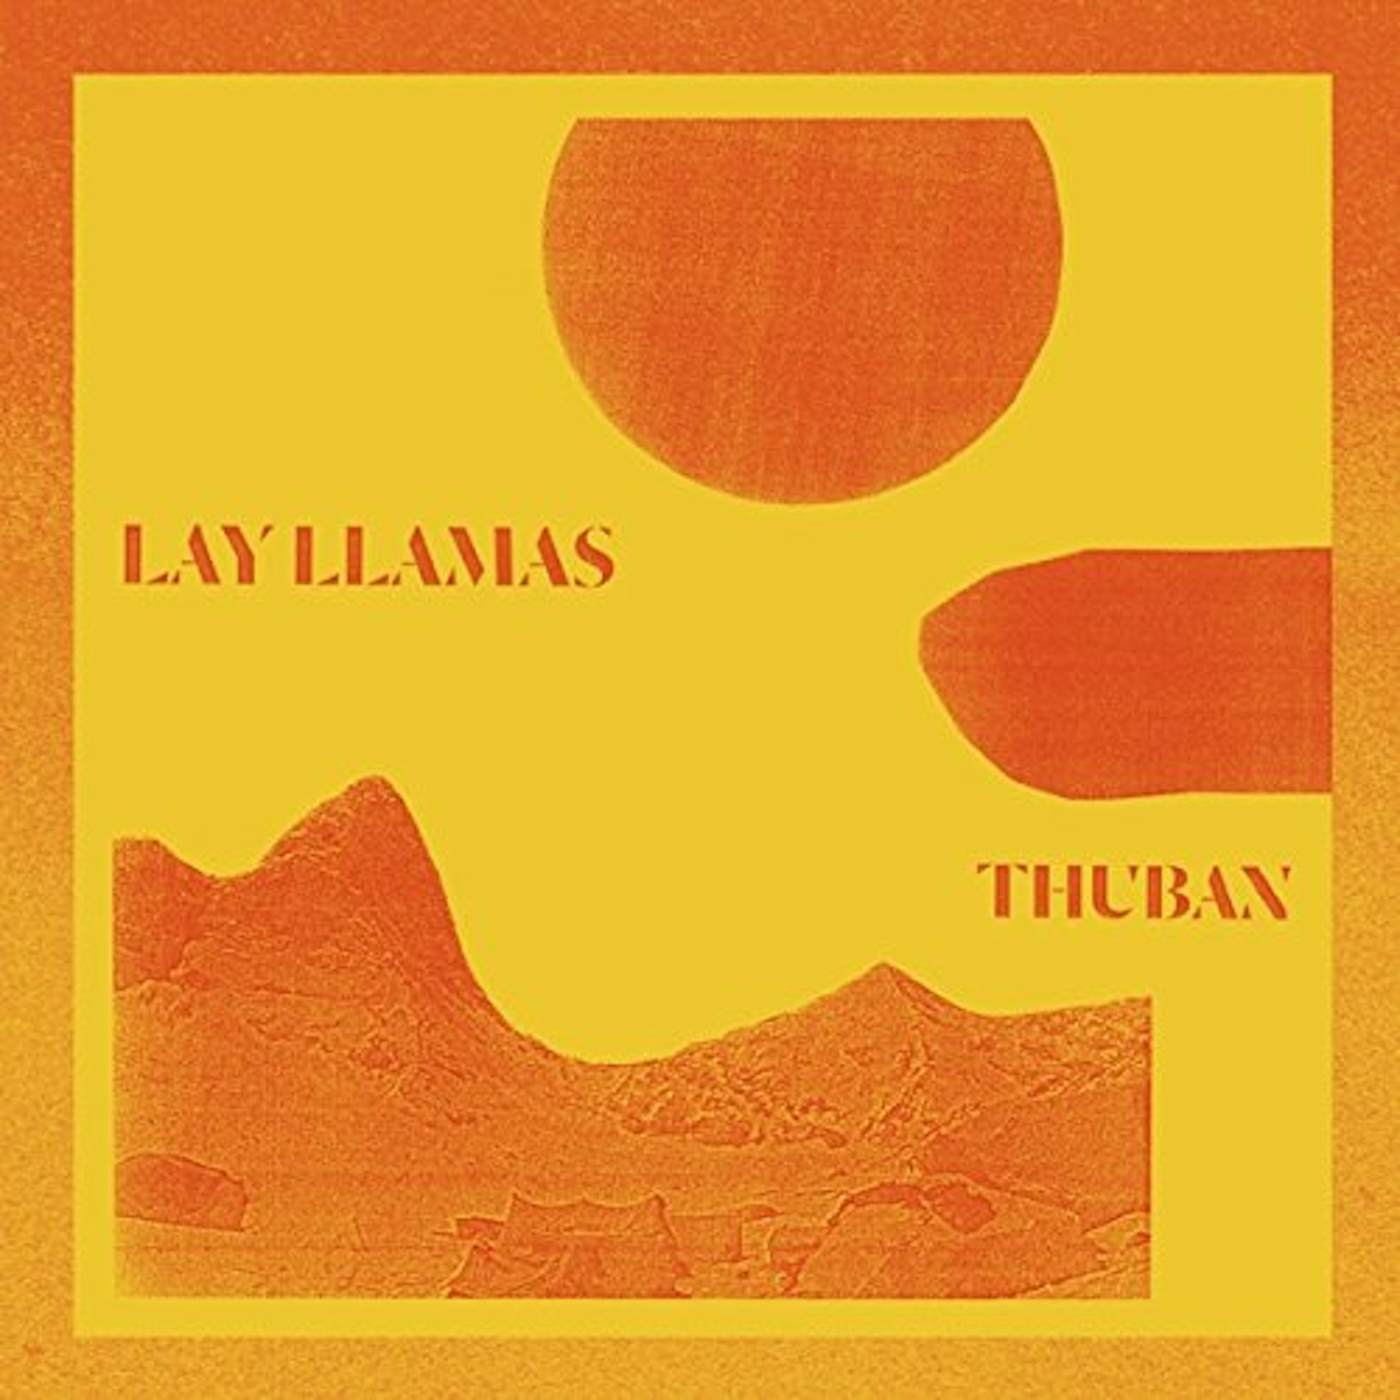 The Lay Llamas THUBAN CD